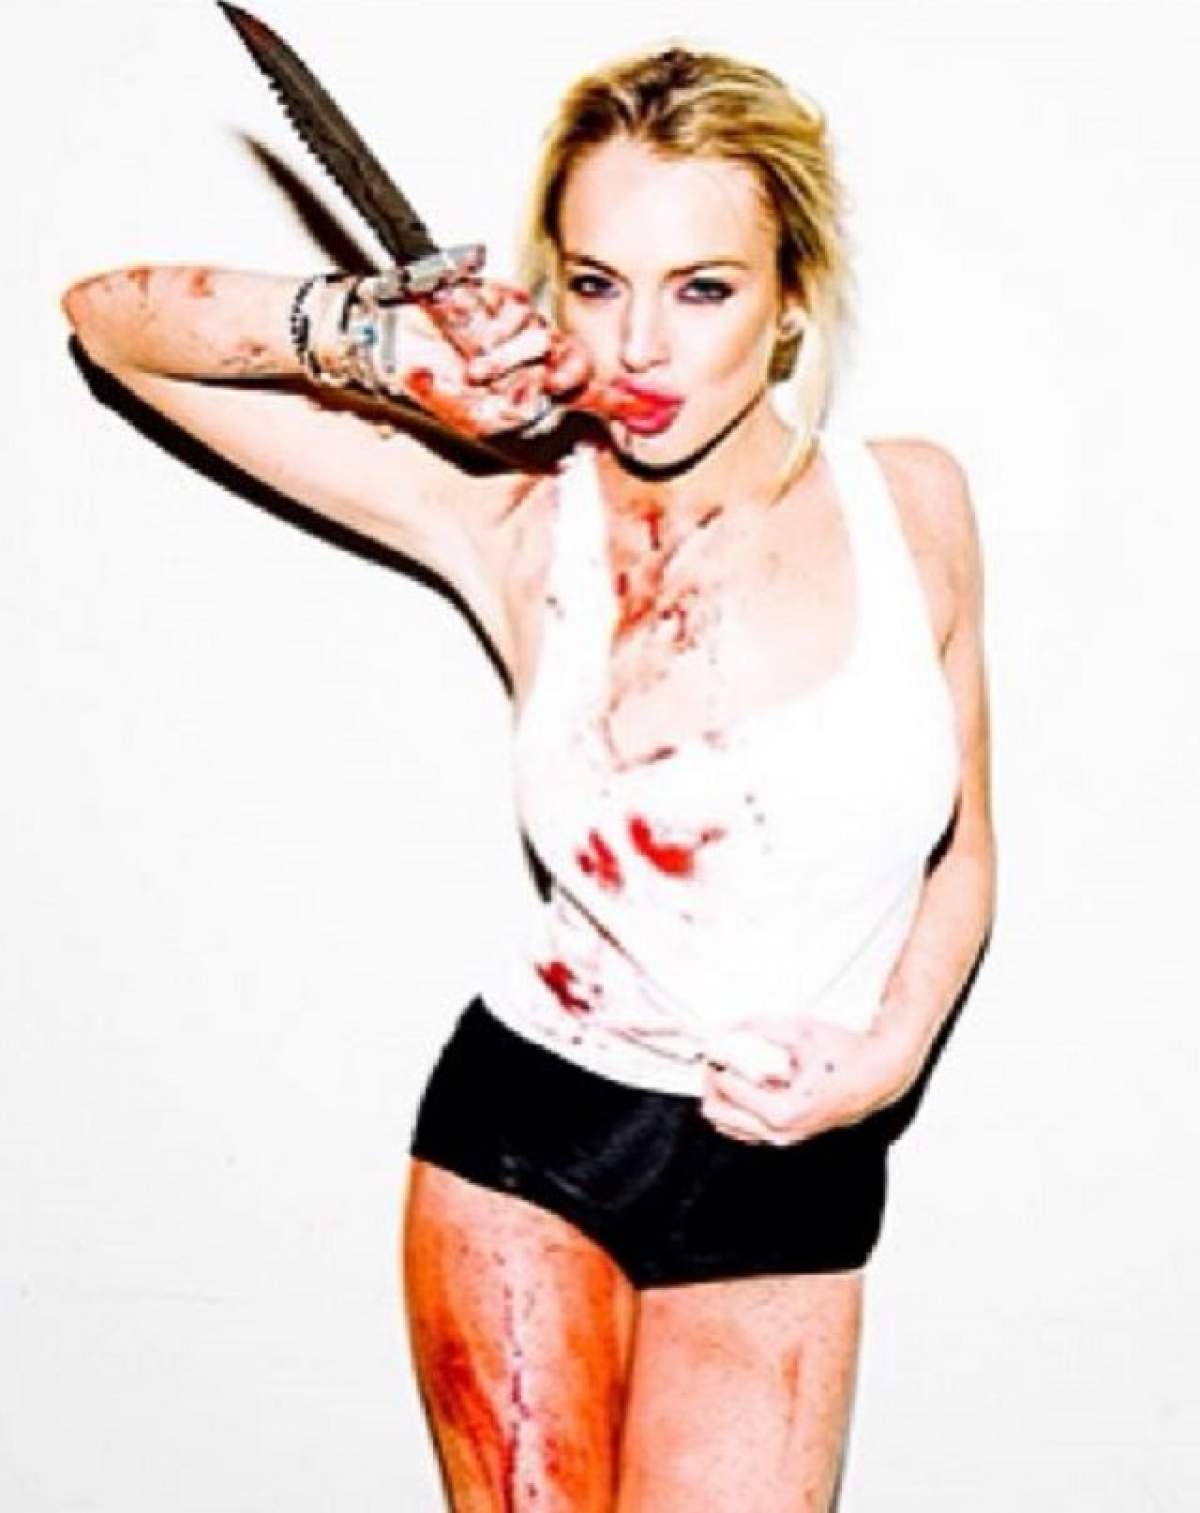 Lindsay Lohan este disperată după atenţie! Blonda a apărut goală pe internet